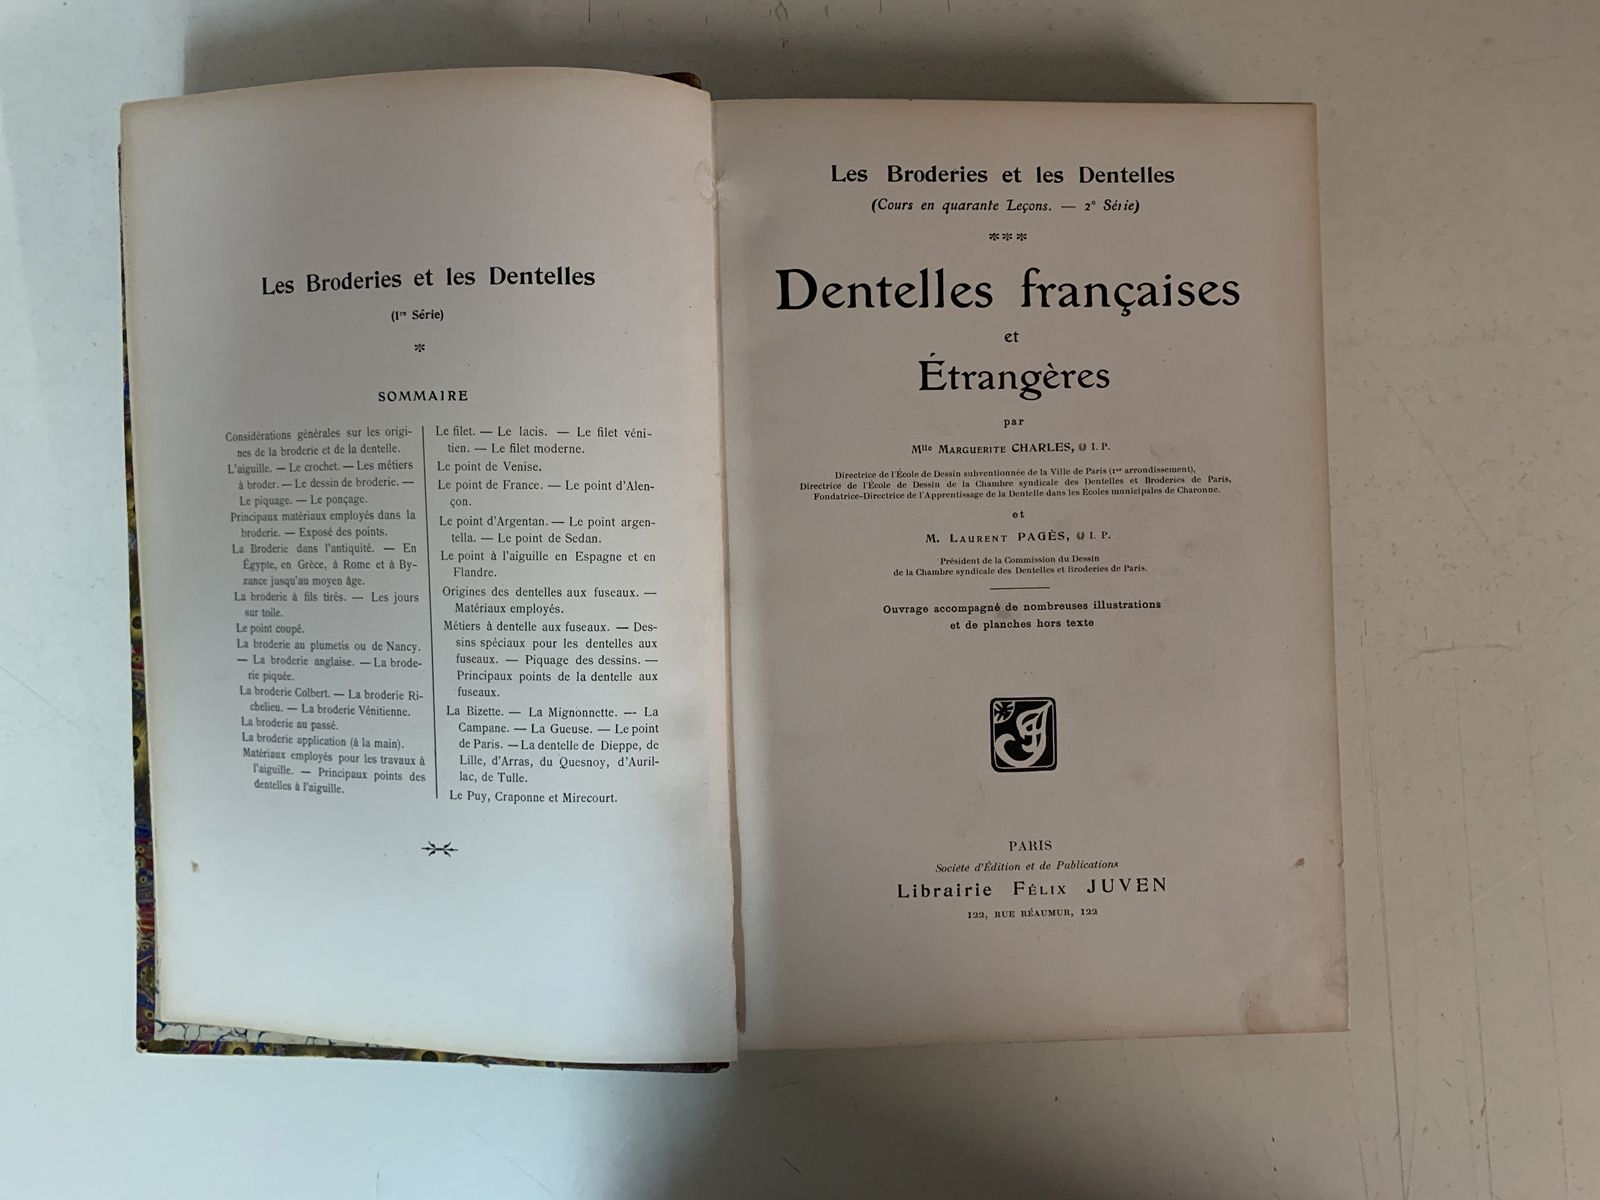 Null 八本关于花边技术的法文书籍。
包括 "Les Broderies et les Dentelles Françaises et Etrangères &hellip;